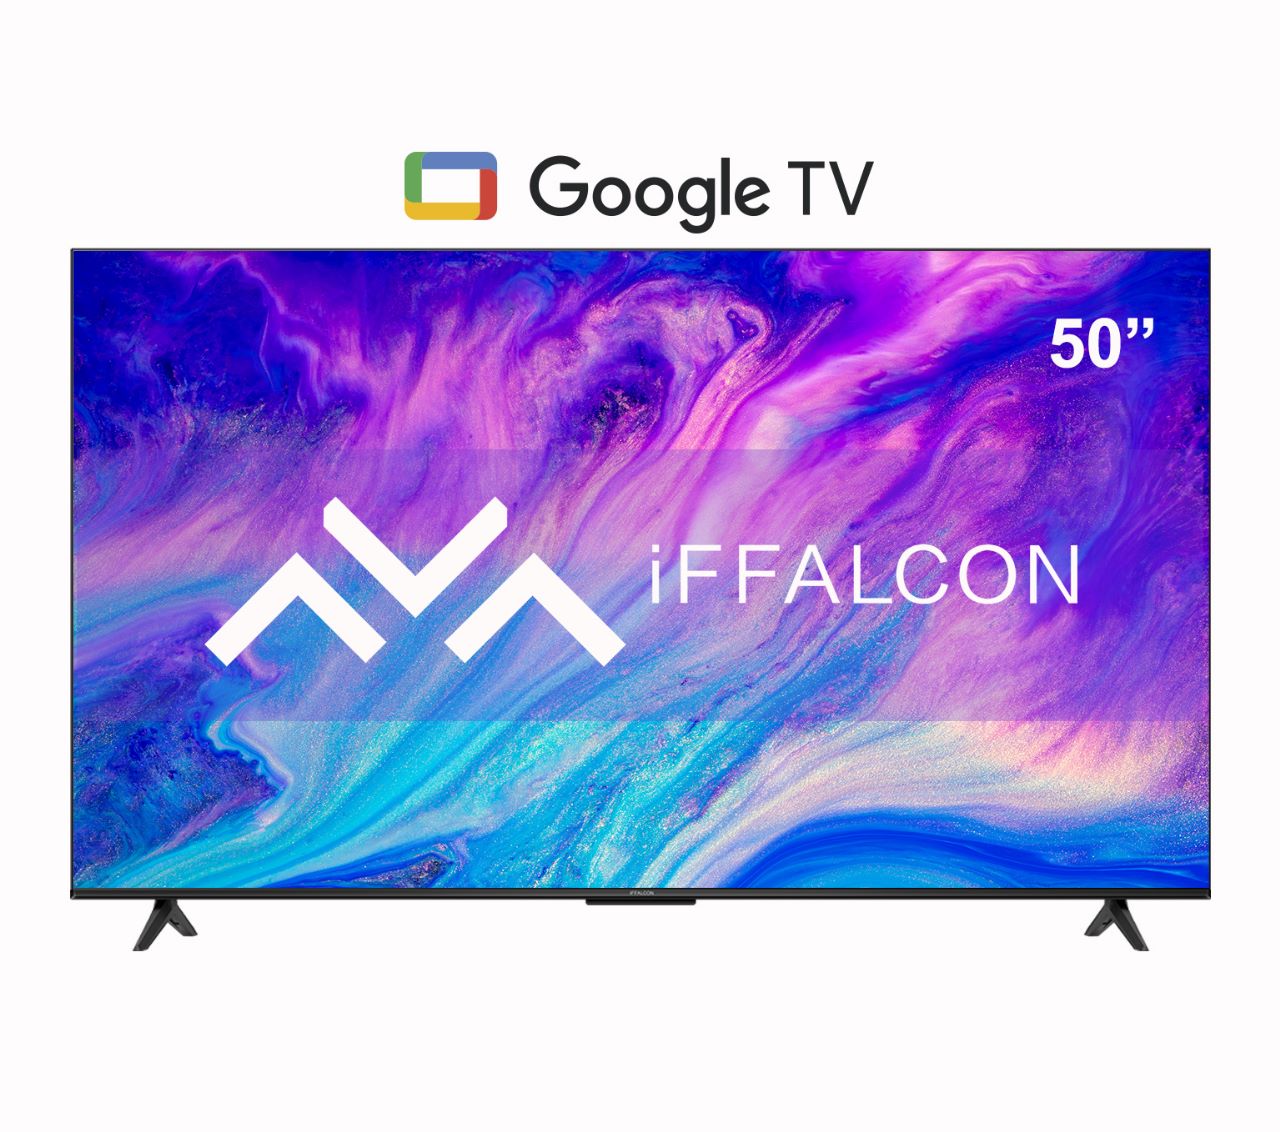 Televisor + Soporte 50" iFFALCON Google TV U62 4K